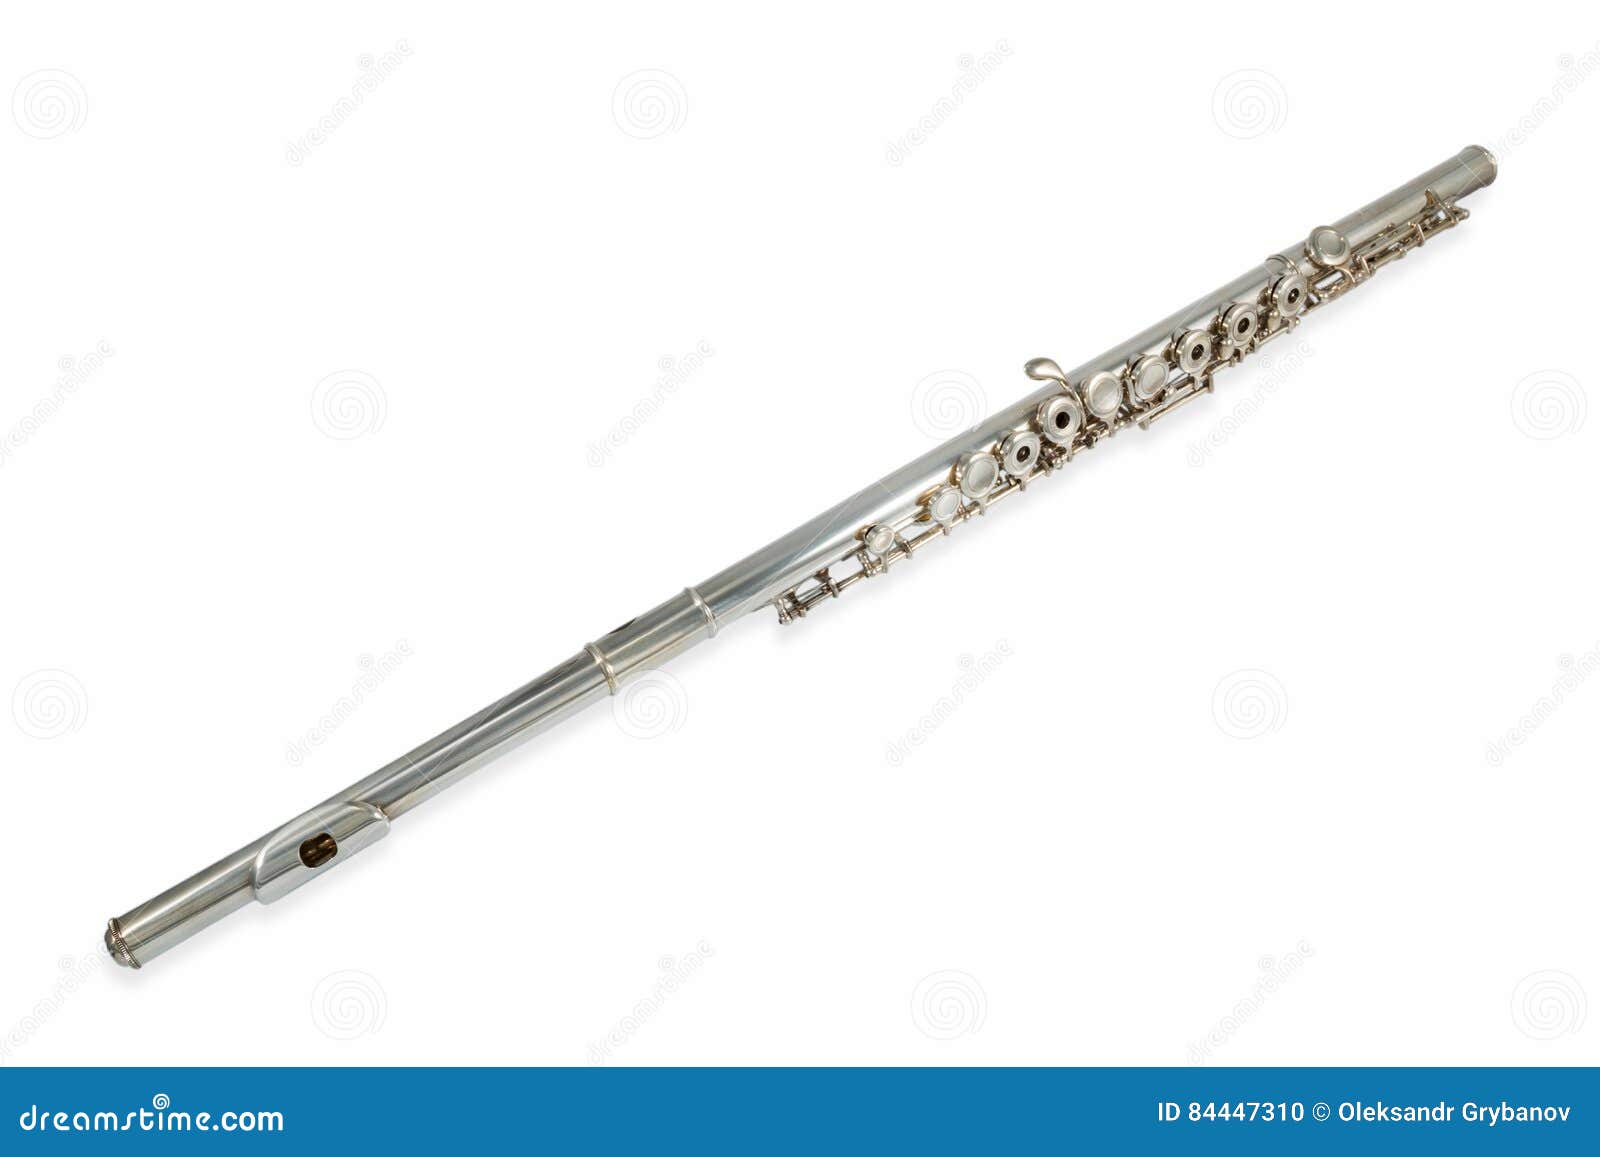 plátano Guinness alivio Shiny metal flute stock photo. Image of gloss, concert - 84447310